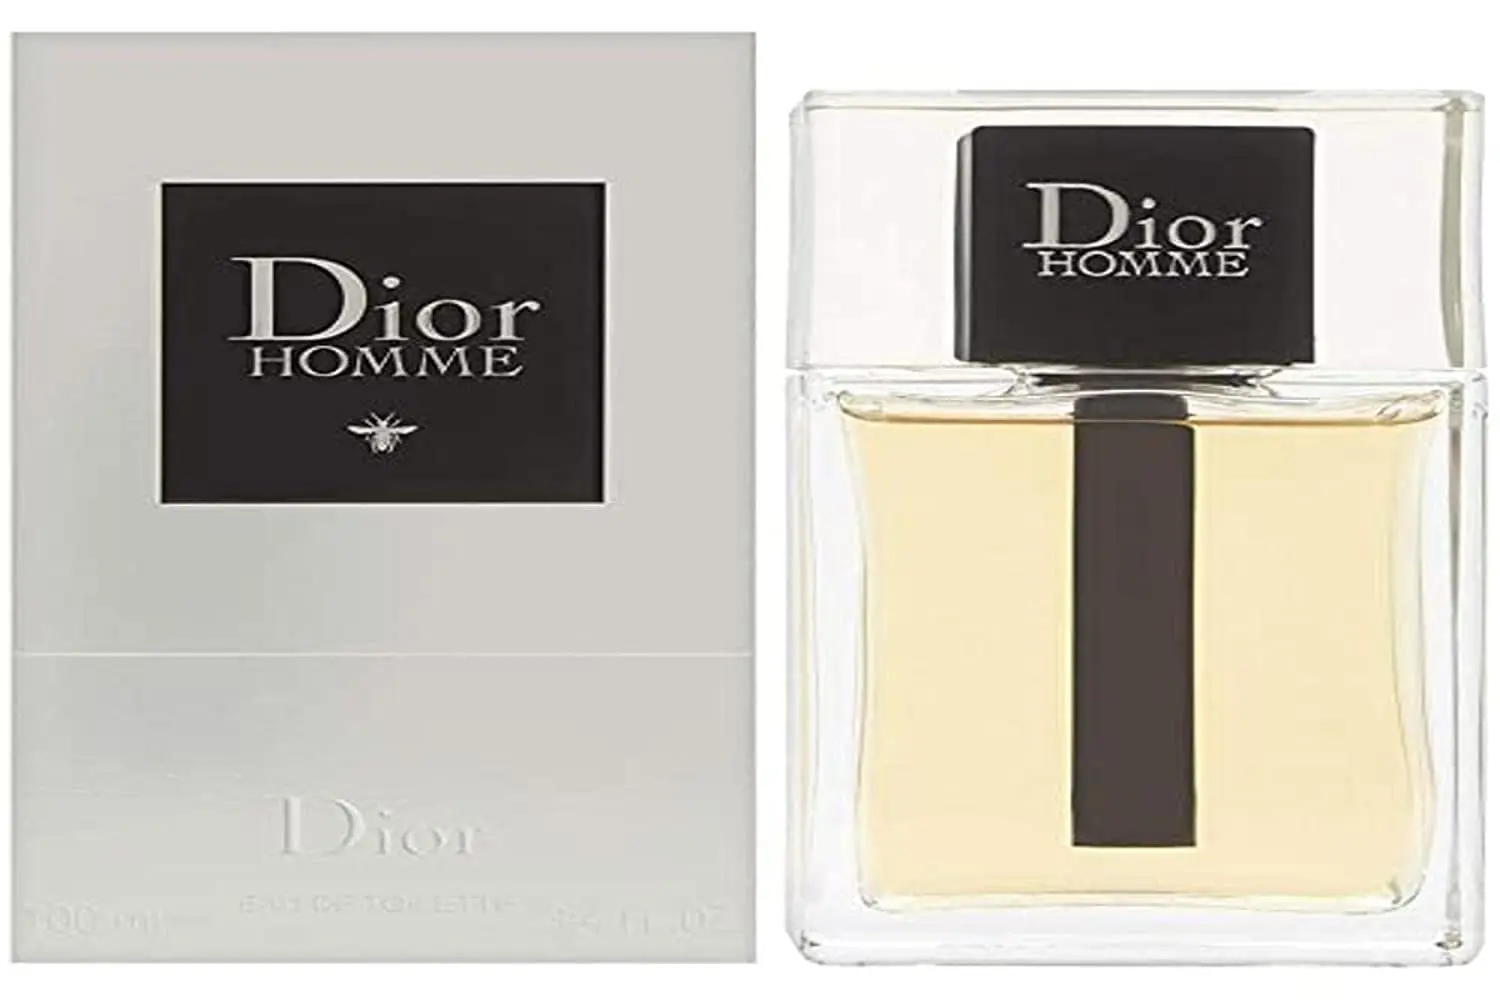 perfume hombre christian dior precios - Cuánto tiempo dura el perfume Dior